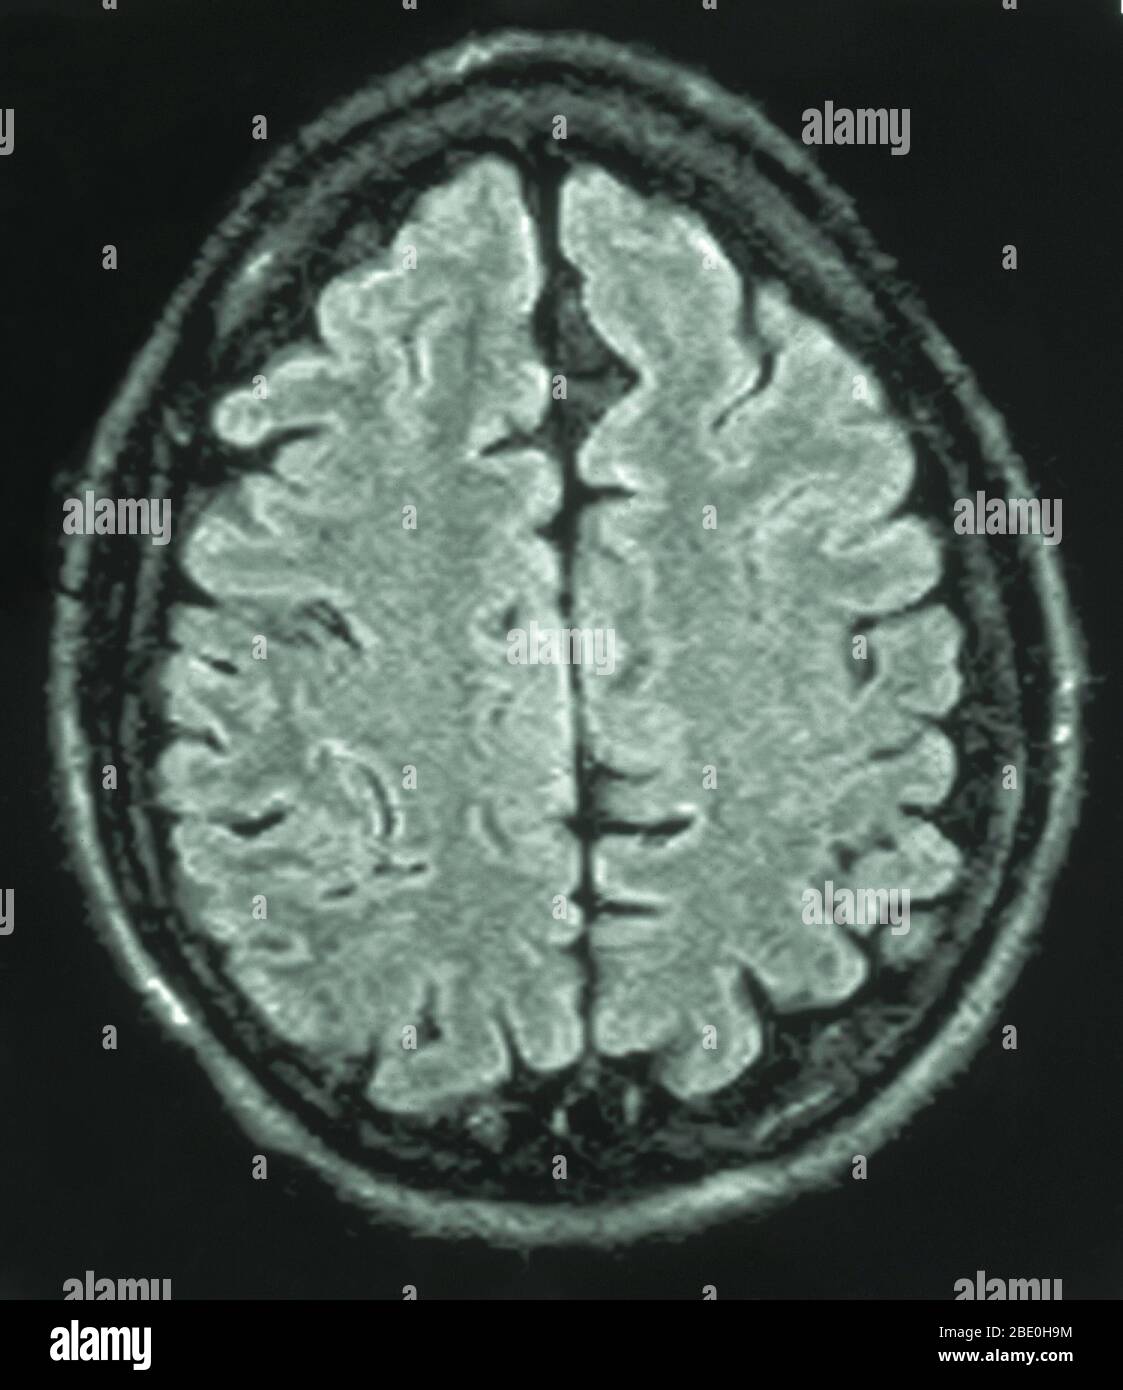 MRT des Gehirns (axiale Ansicht) ein 26 Jahre alter Mann. Das MRI erfolgte durch Kopfverletzungen bei einem Autounfall. Diagnose von des MRIS ist eine kleine Arachnoidalzyste im vorderen linken frontalen Region parasagittalen. Alle anderen Aspekte erscheinen normal. Stockfoto